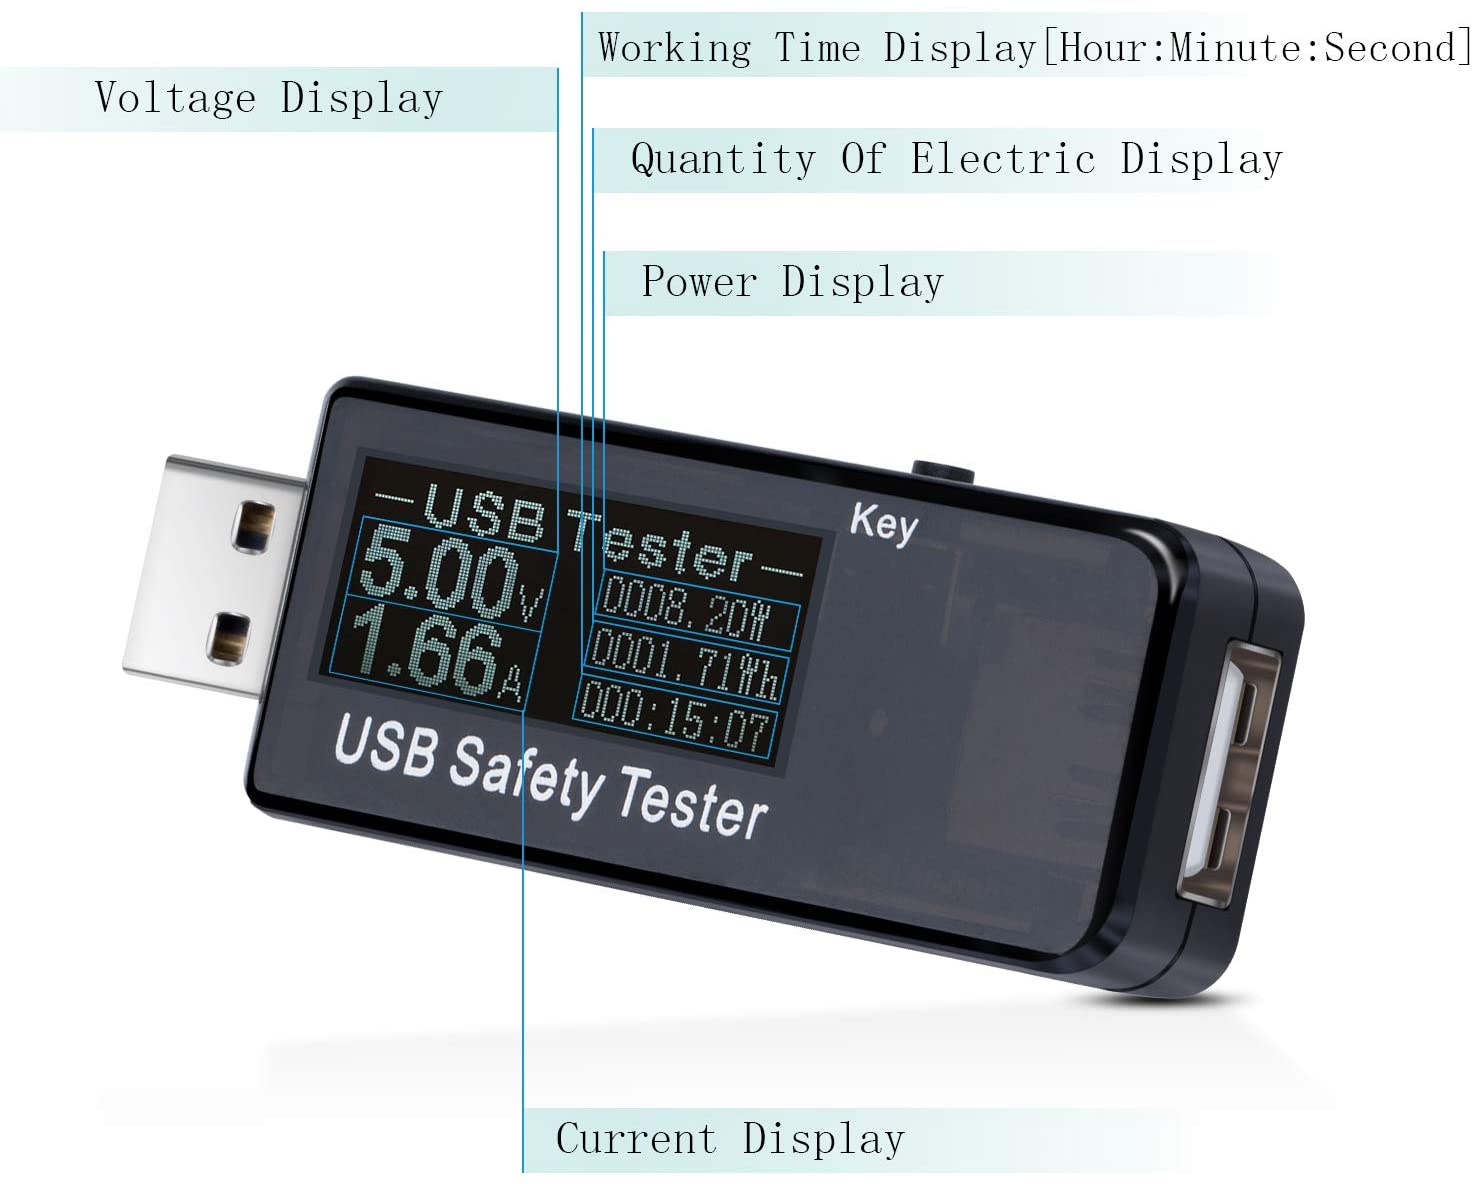 USB Safety Tester USB Digital Power Meter Multimeter Current Voltage Monitor%20(11)